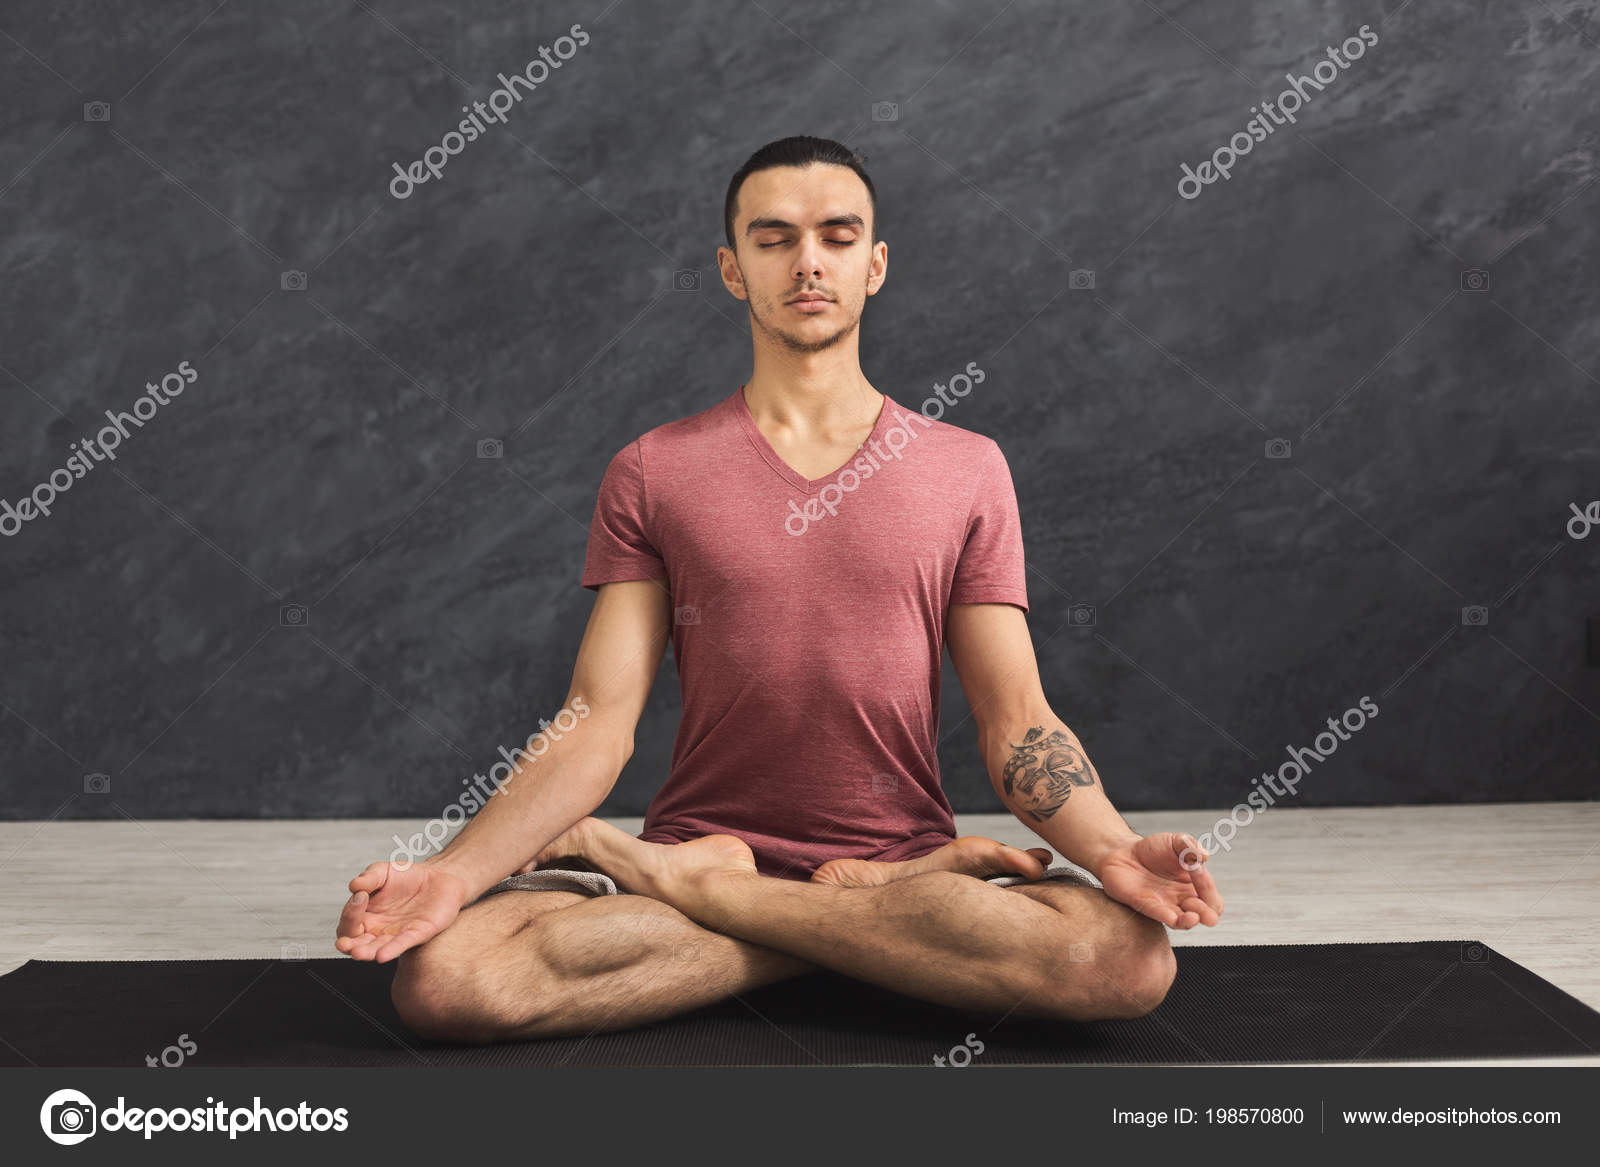 https://st4.depositphotos.com/4218696/19857/i/1600/depositphotos_198570800-stock-photo-young-man-practicing-yoga-relax.jpg